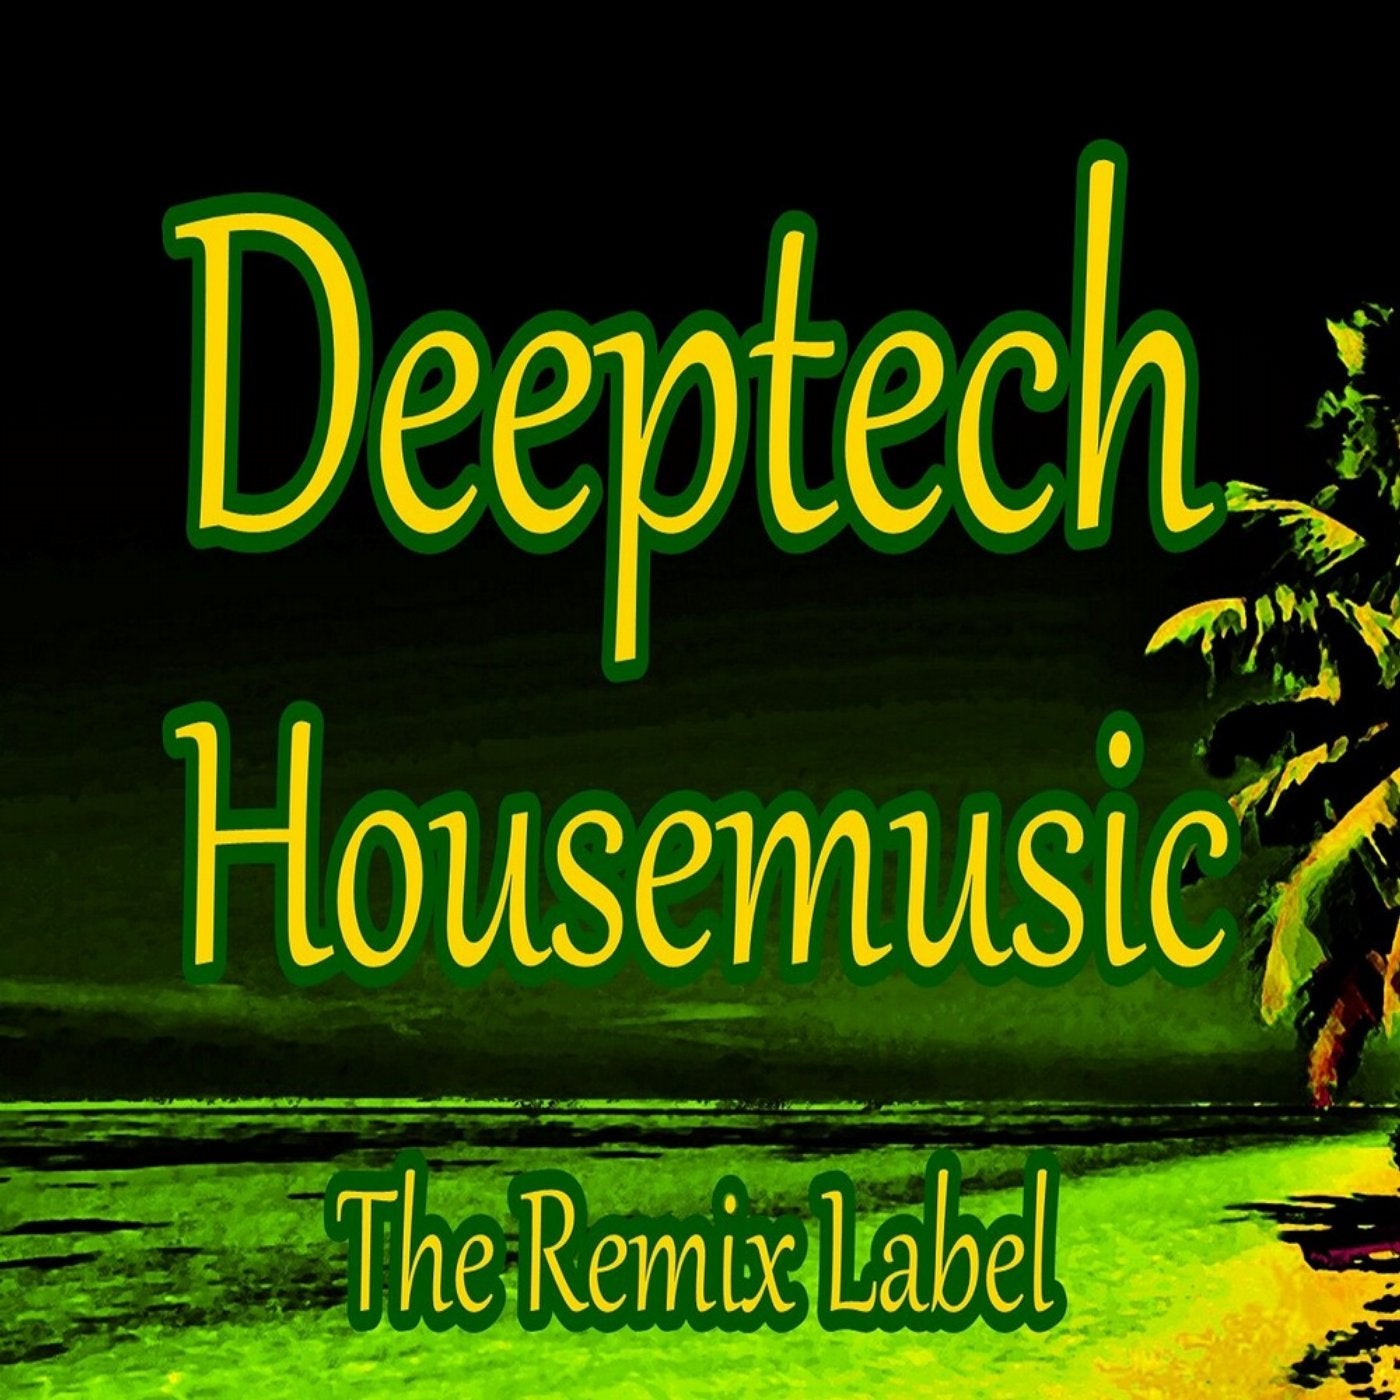 Deeptech Housemusic